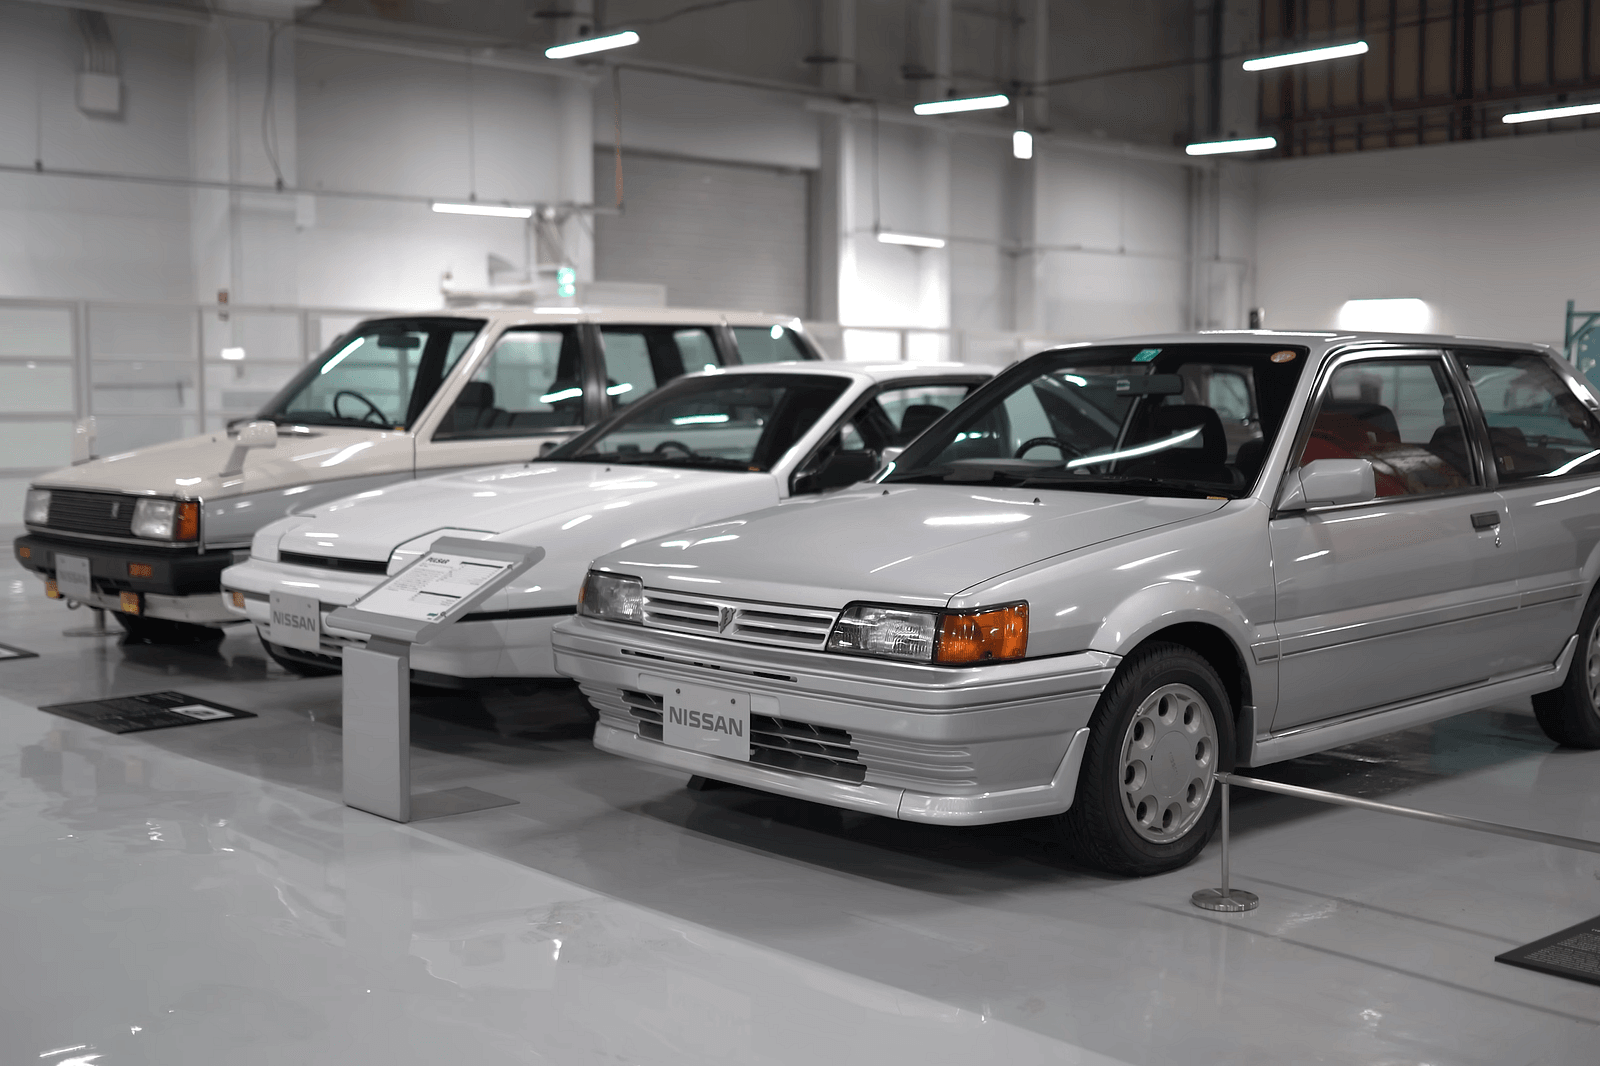 مجموعة سرية لسيارات نيسان في اليابان تضم كافة الطرازات التاريخية منذ تأسيس العلامة 16